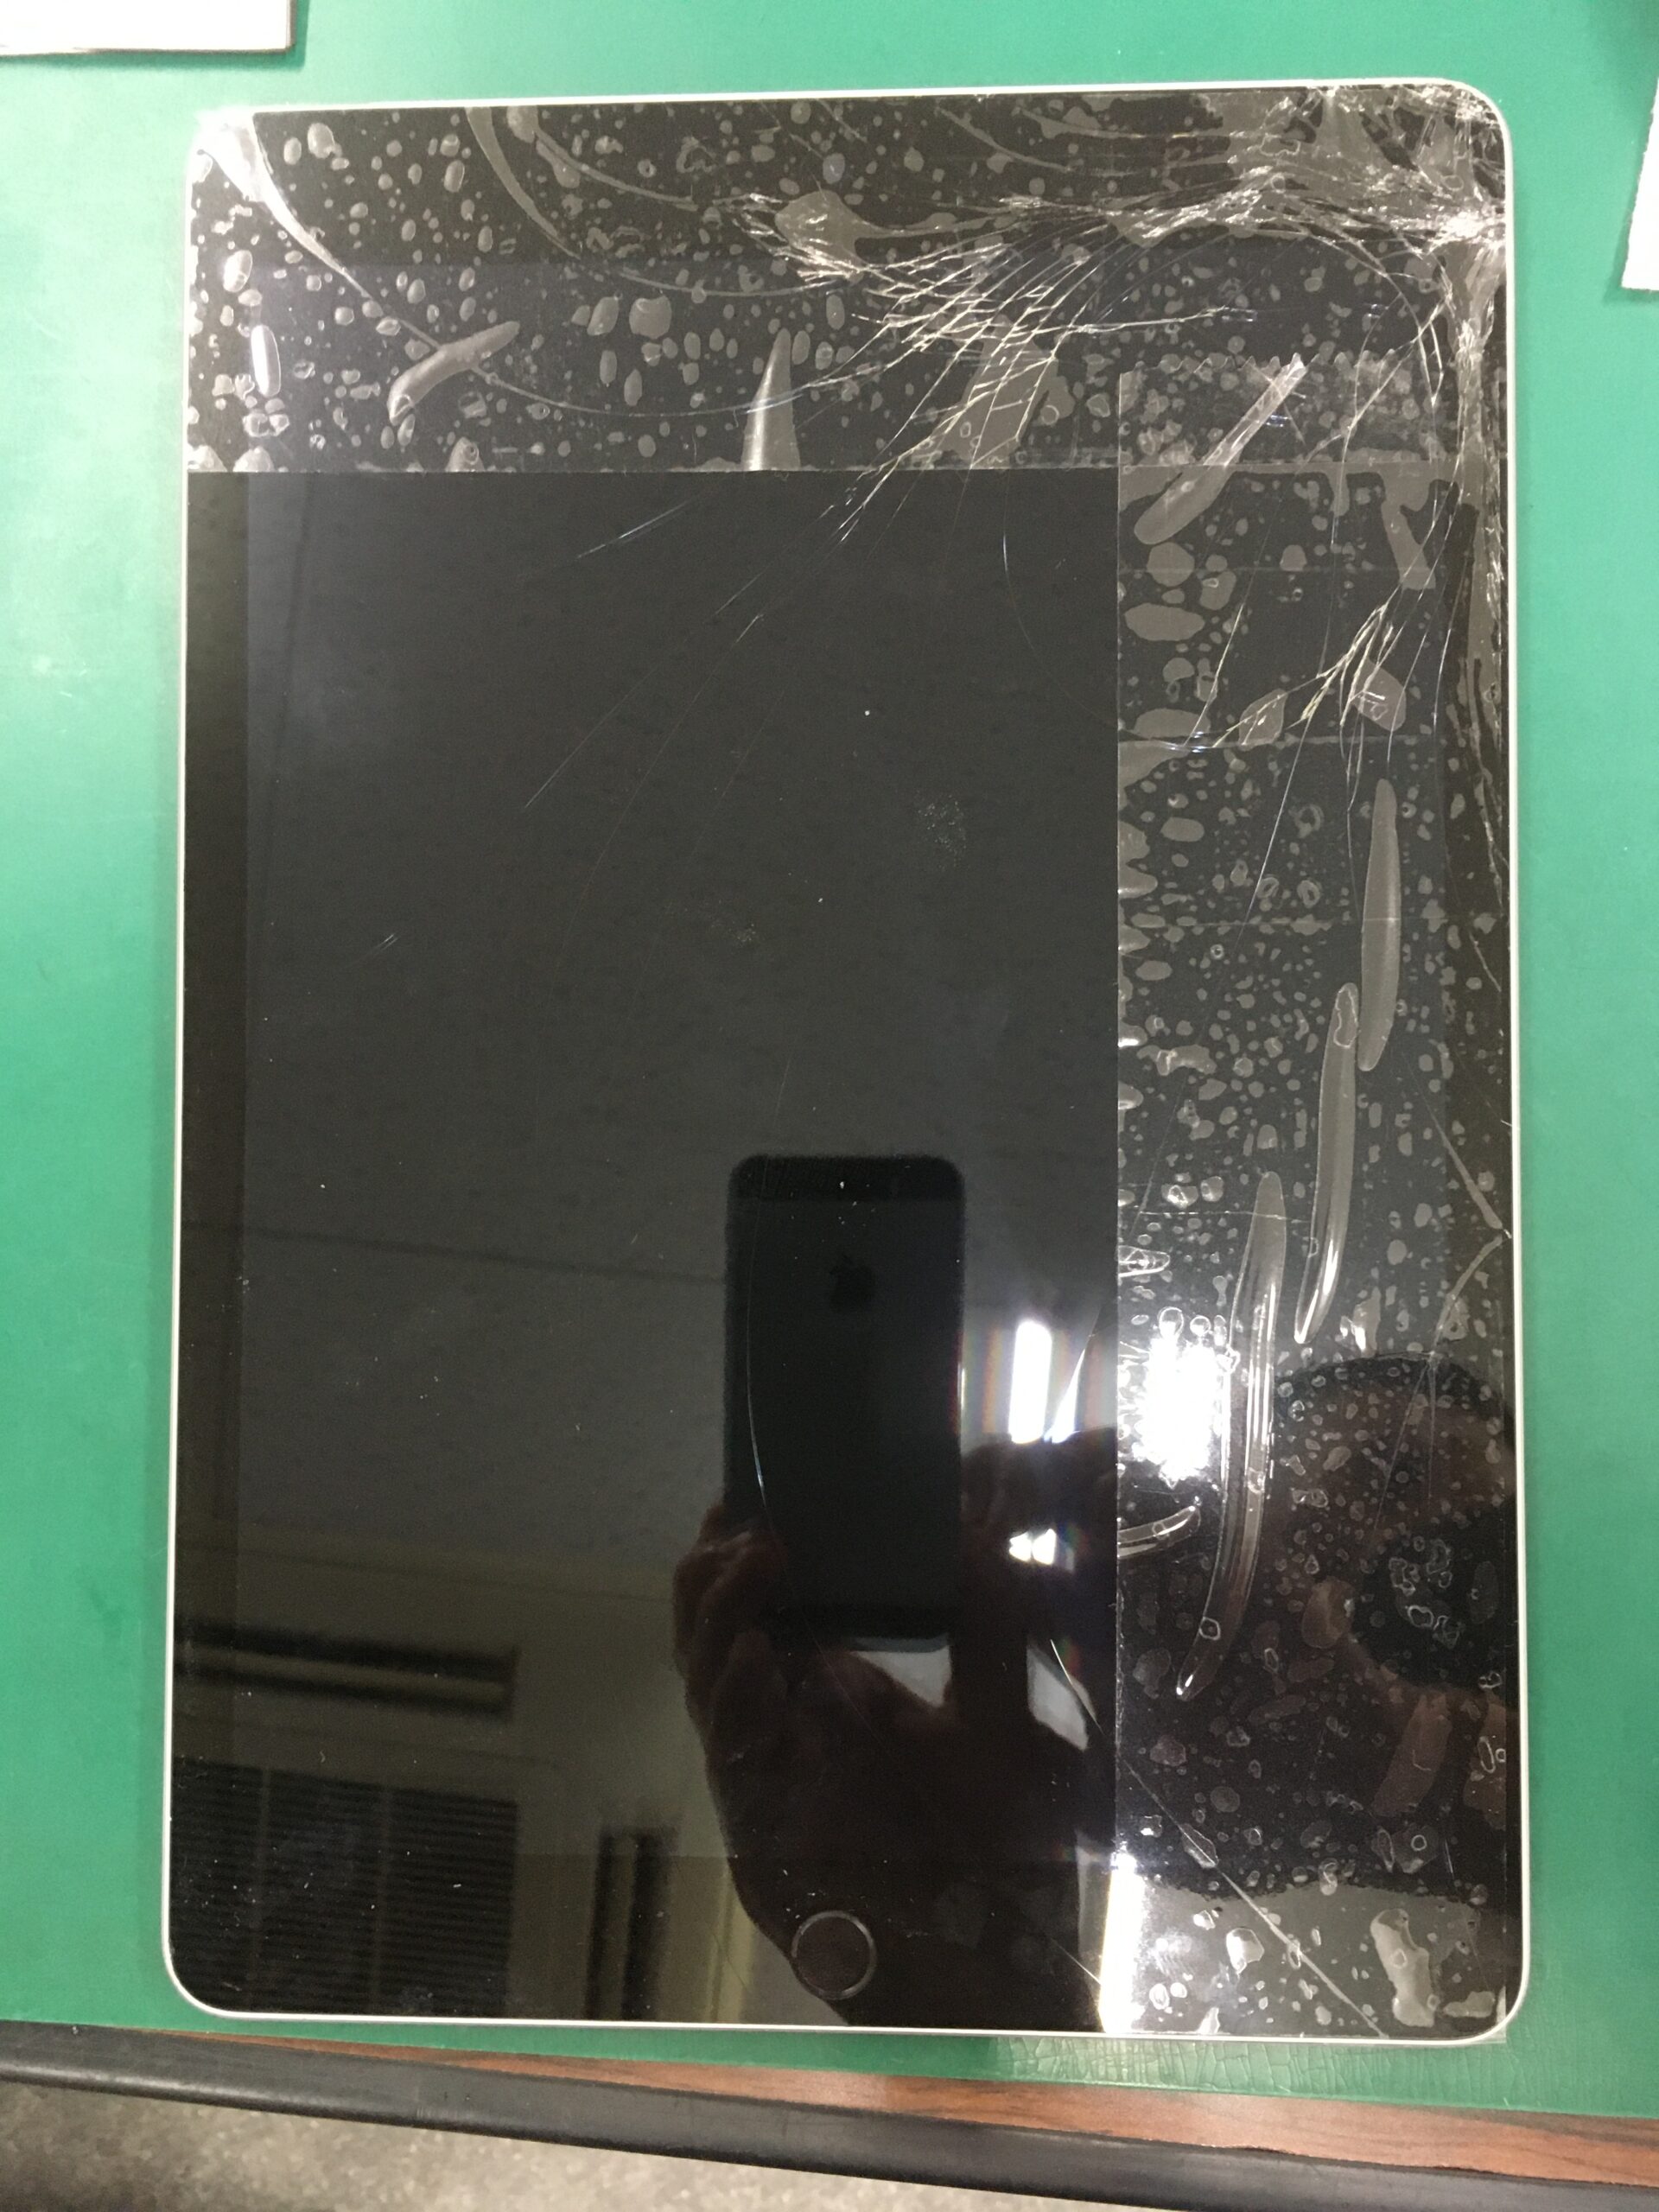 豊明市で iPad のガラス画面割れや液晶破損の修理